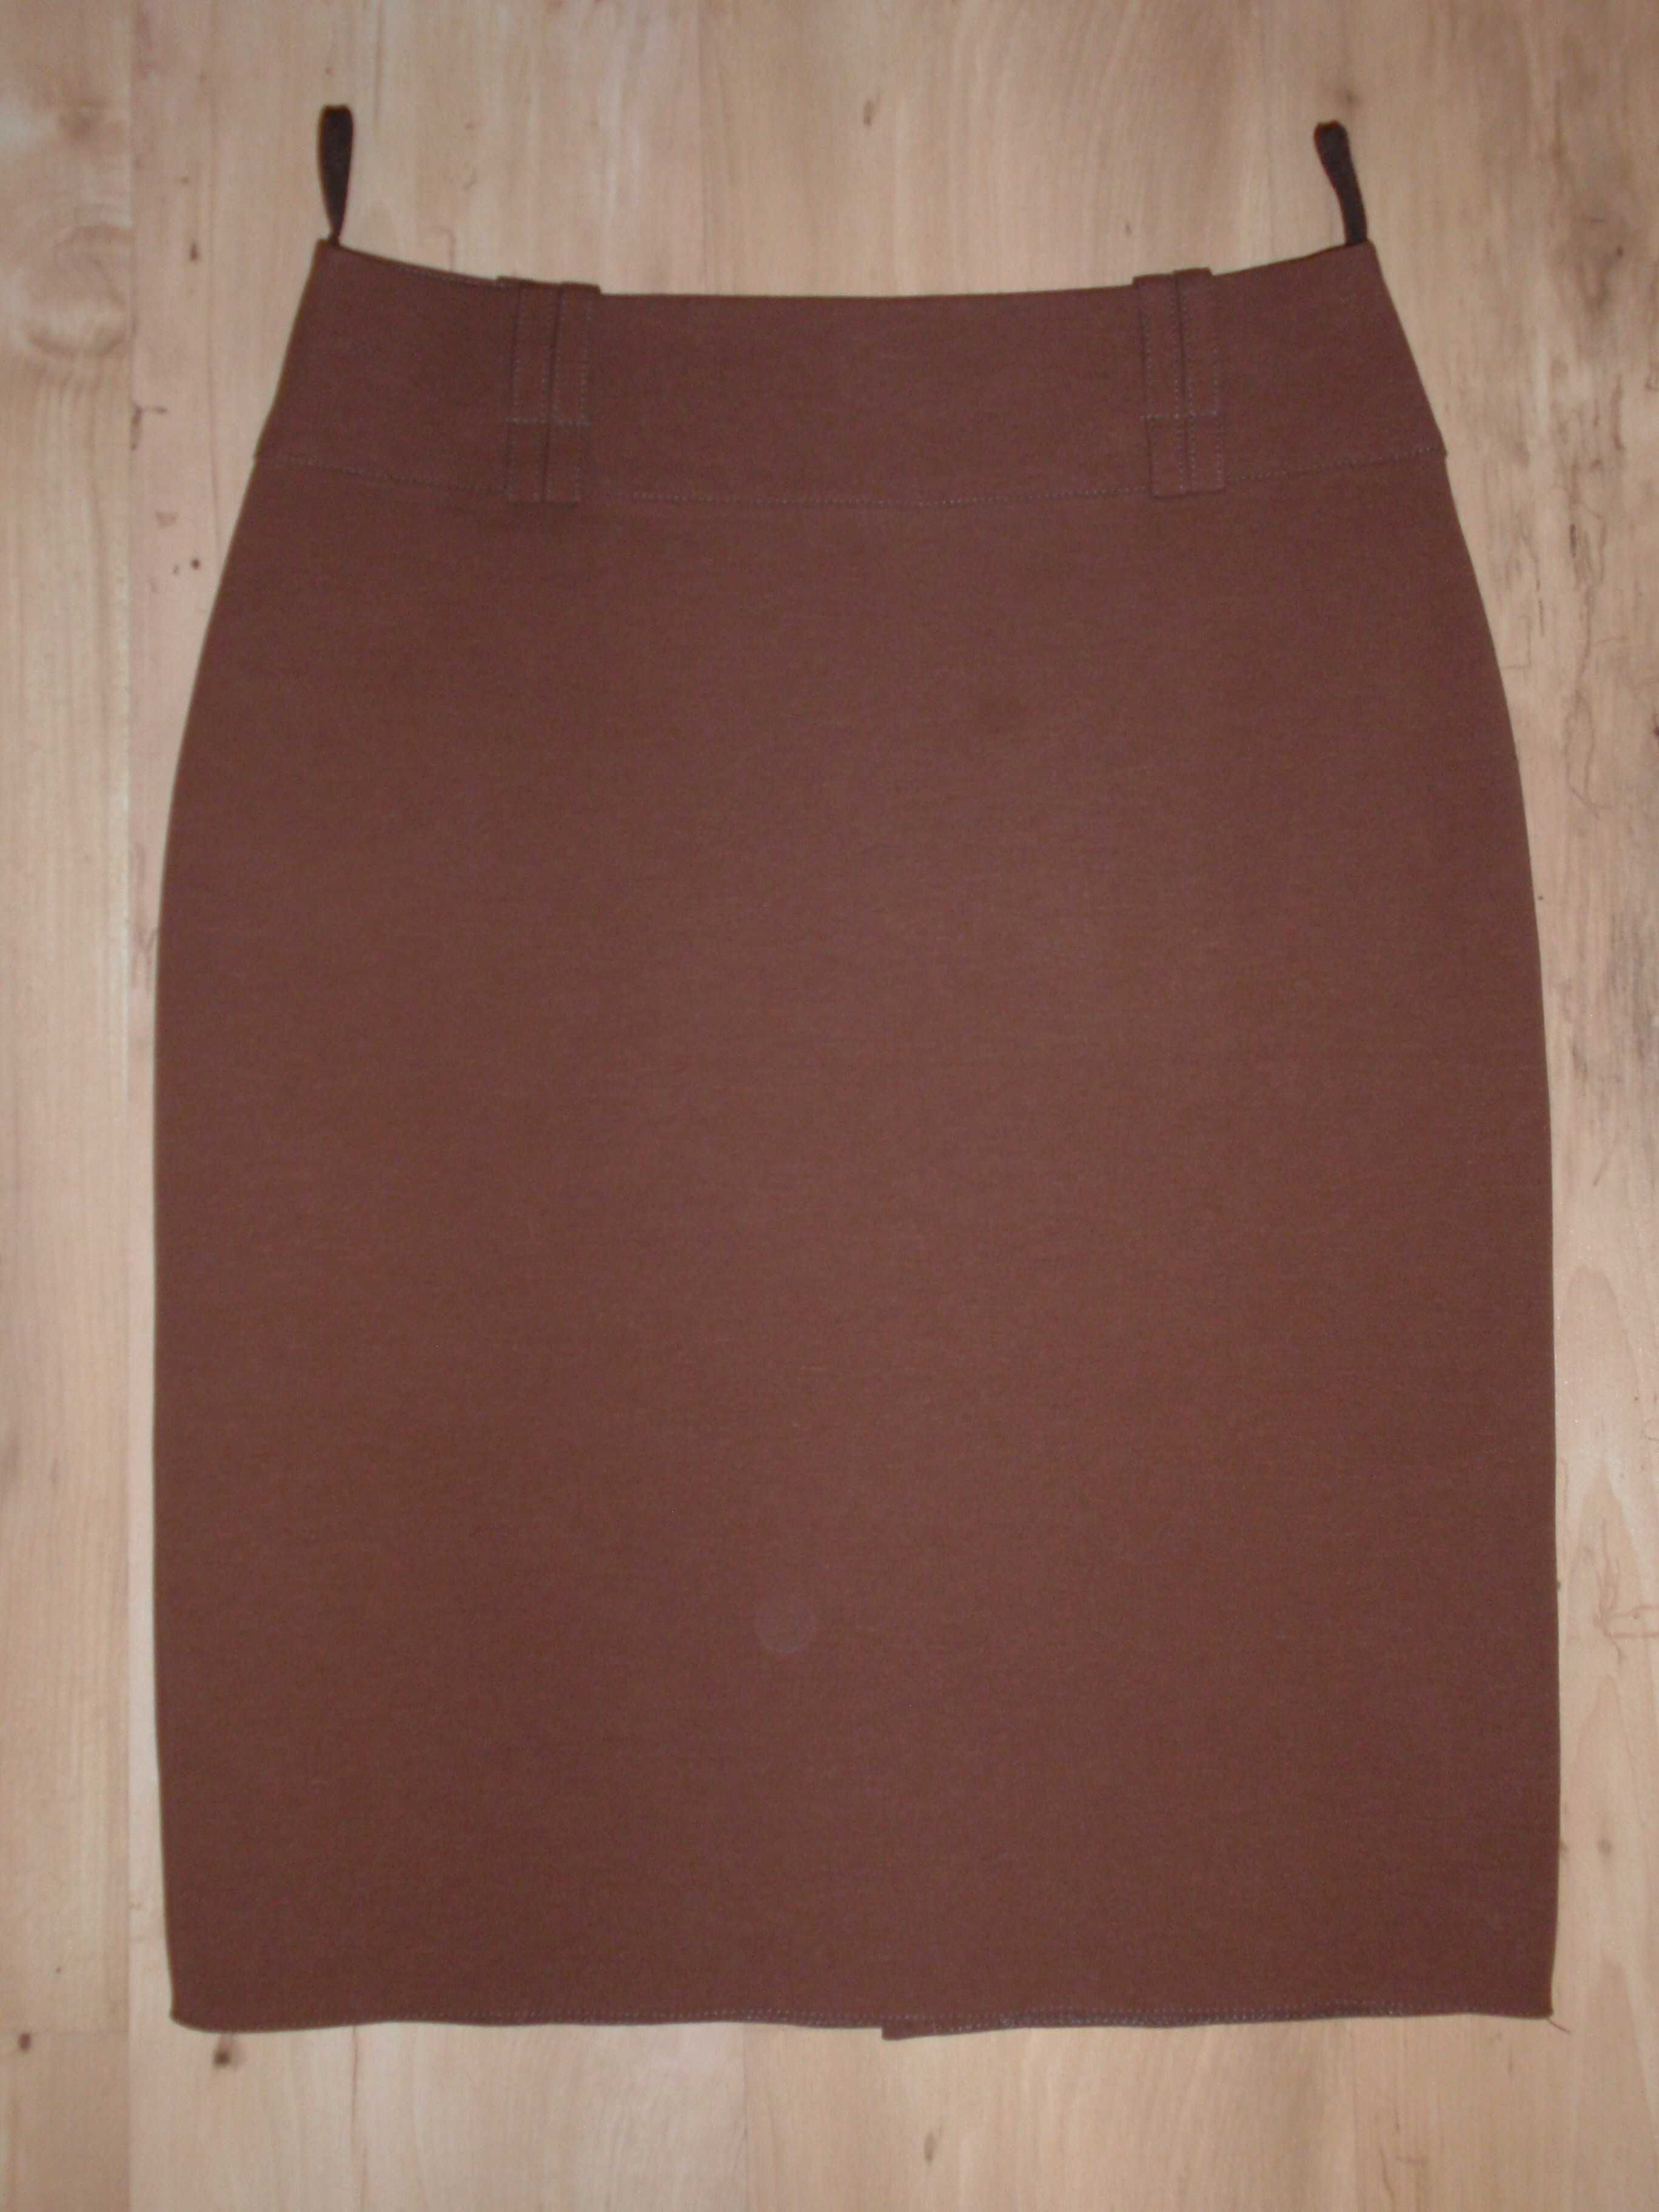 nowa brązowa spódnica na podszewce w pasie 72cm